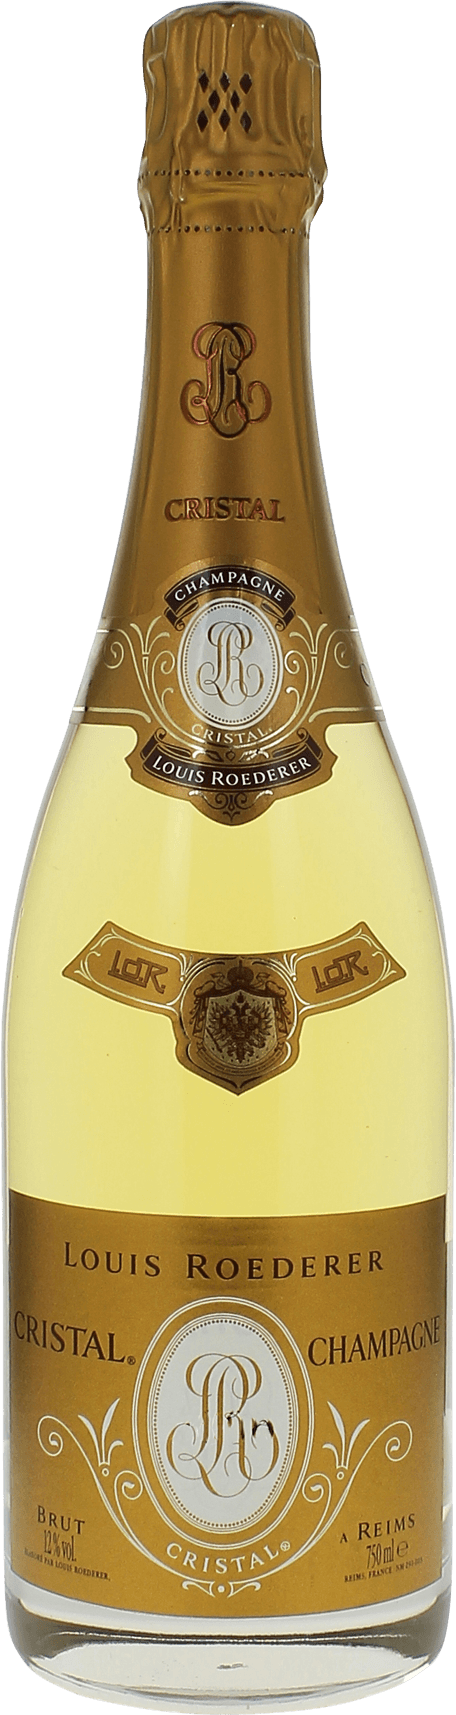 Cristal roederer 2000  Roederer, Champagne